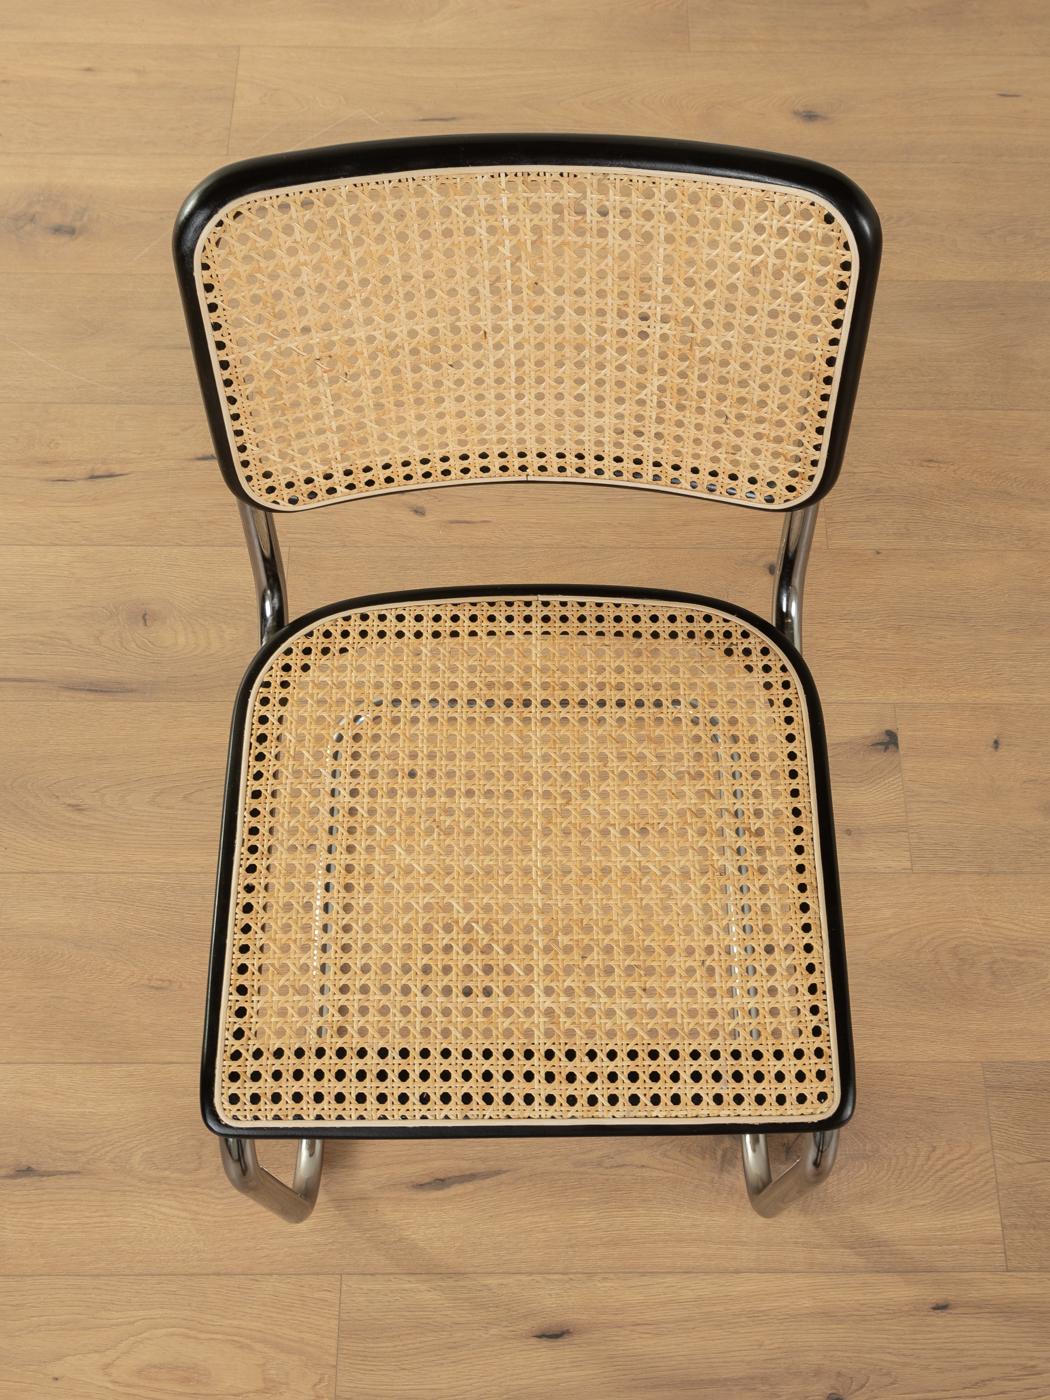 Stainless Steel Legendary tubular steel chairs S 32 & S 64, Marcel Breuer for Thonet